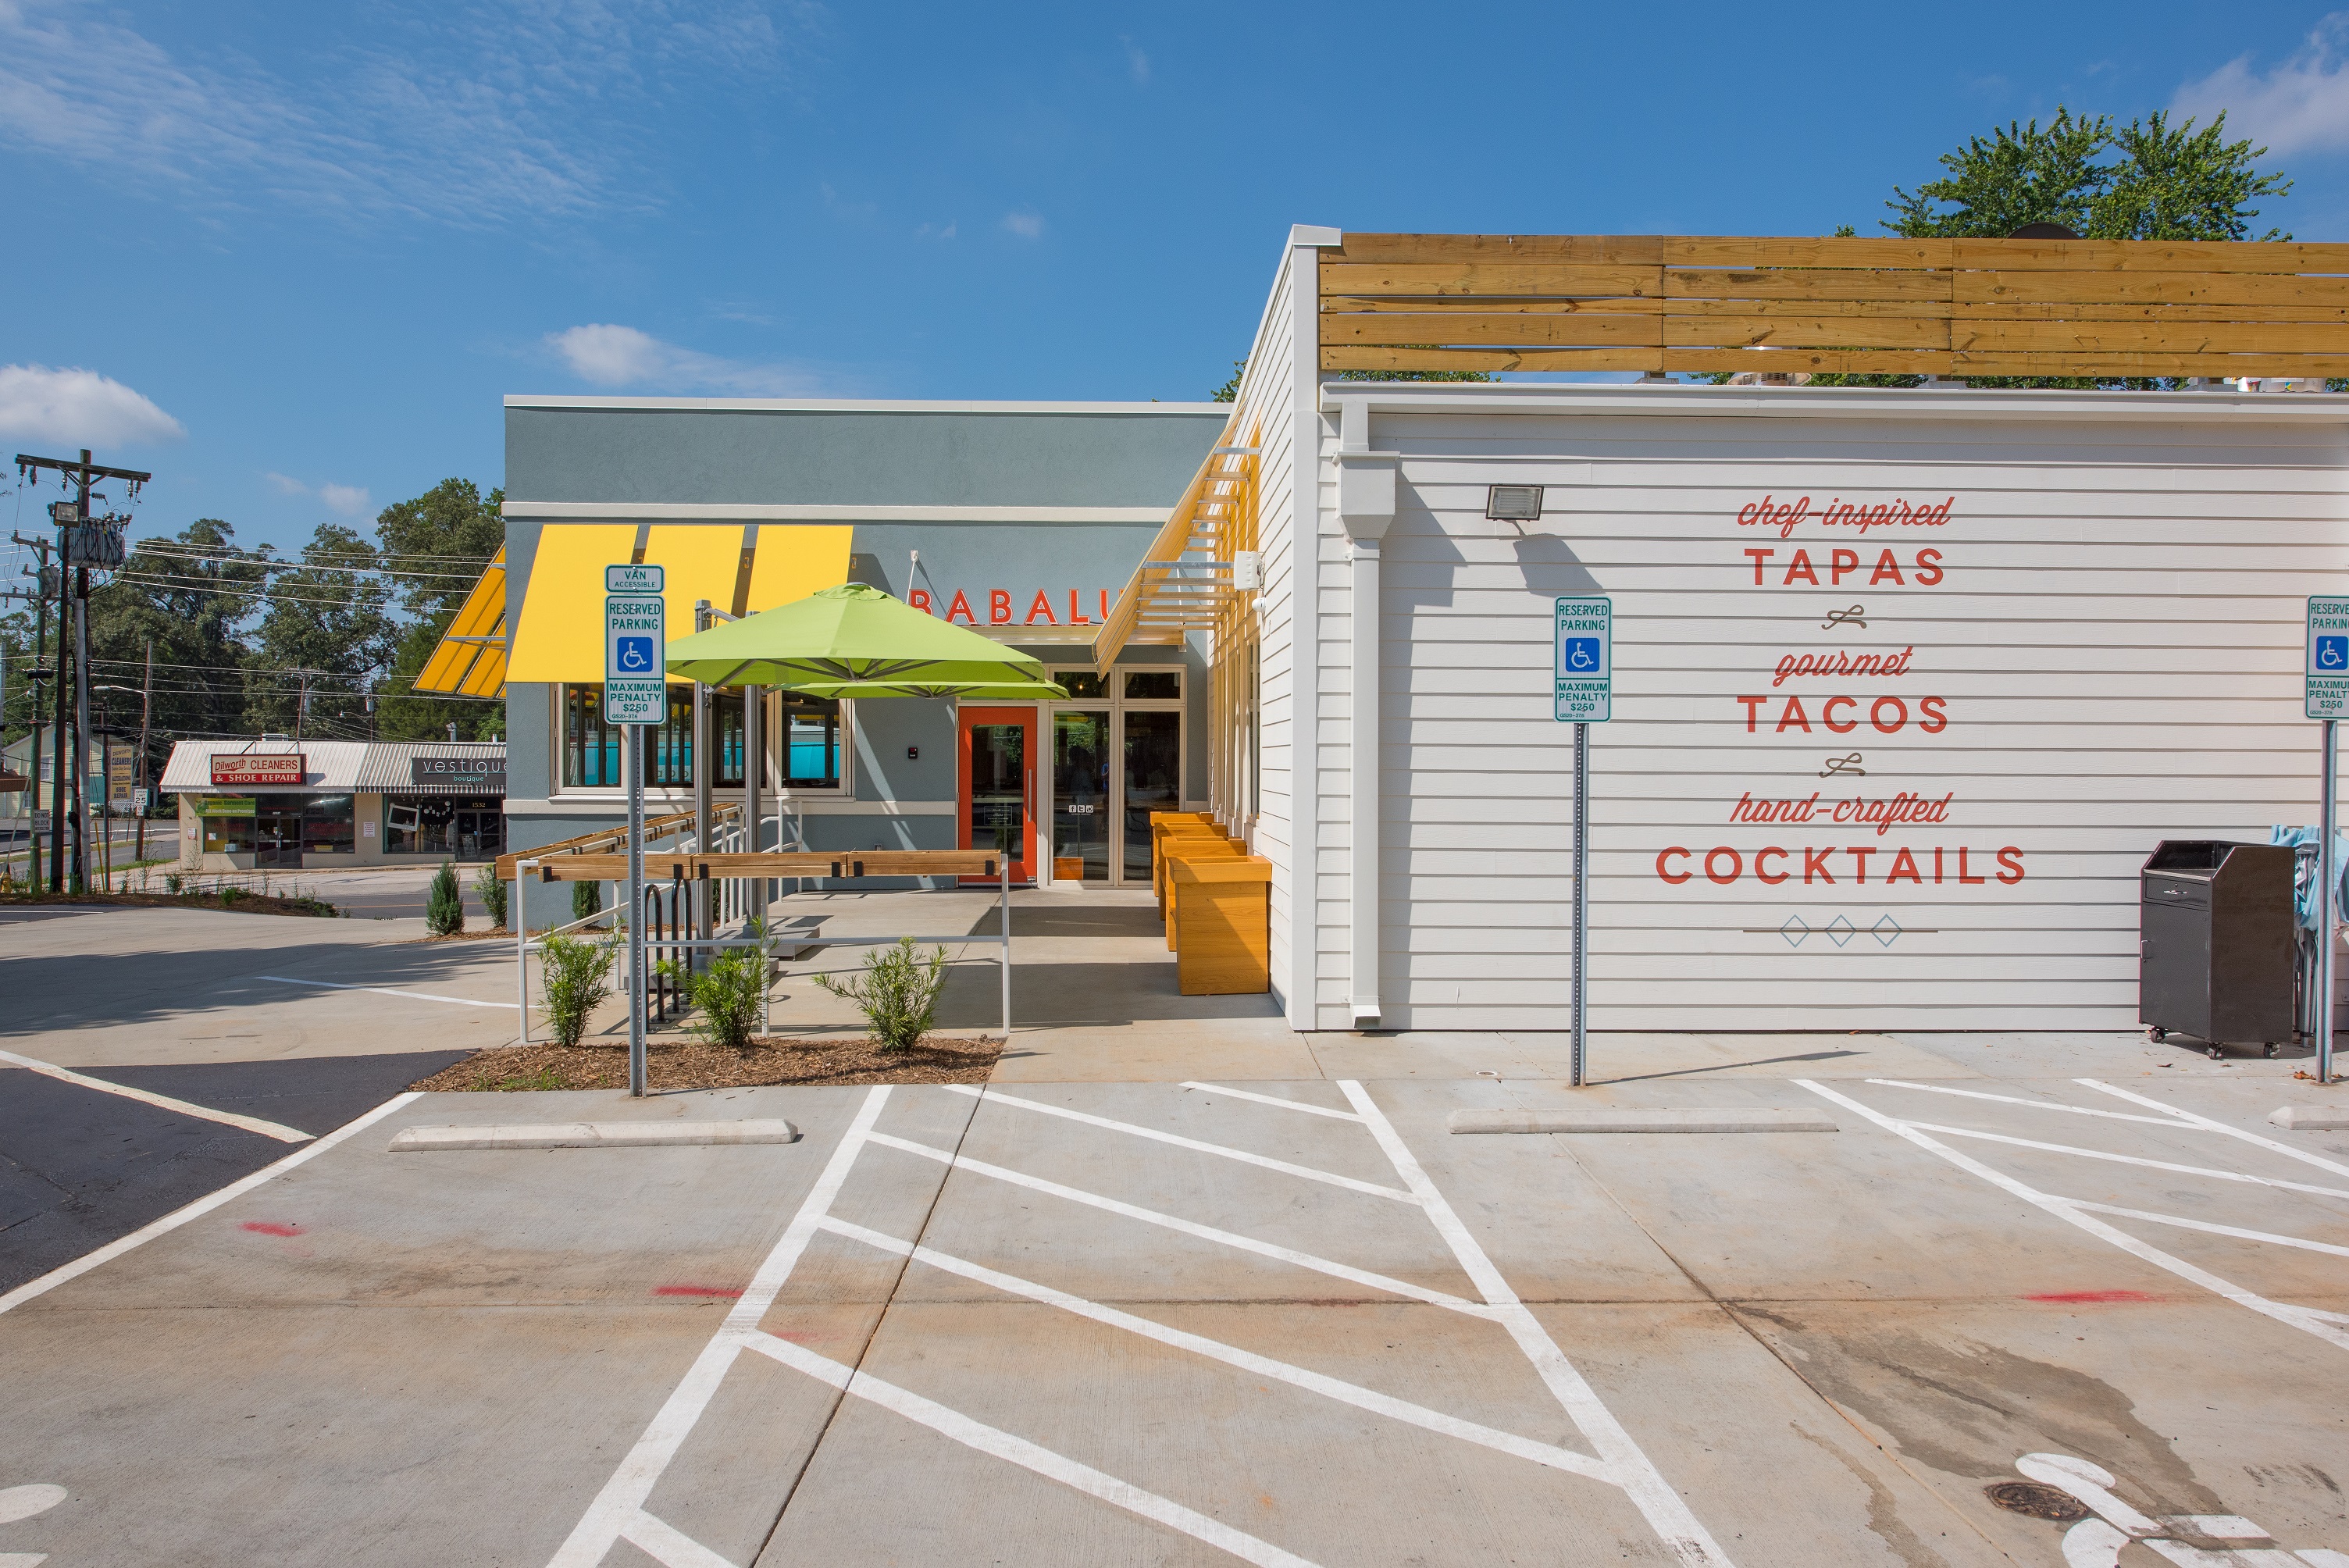 Babalu Tapas & Tacos, Charlotte, N.C.